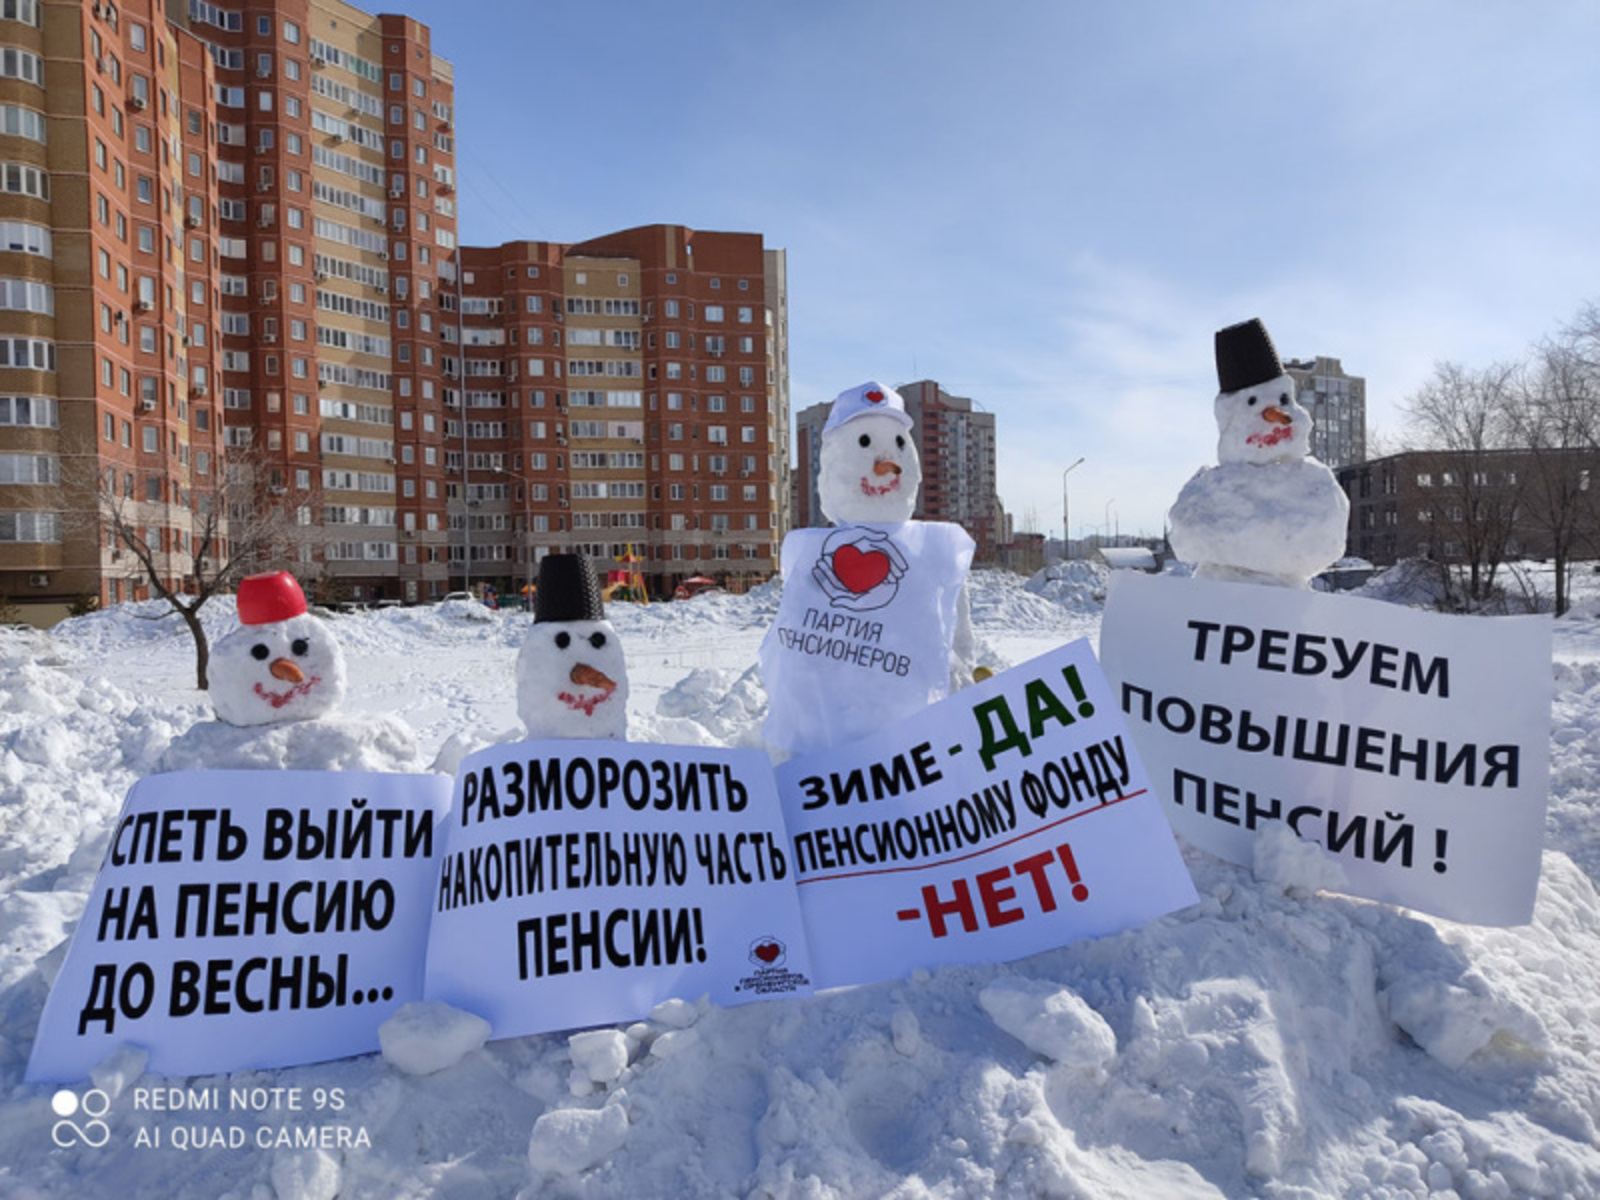 Фото с сайта Российской партии пенсионеров www.pensioner.party.